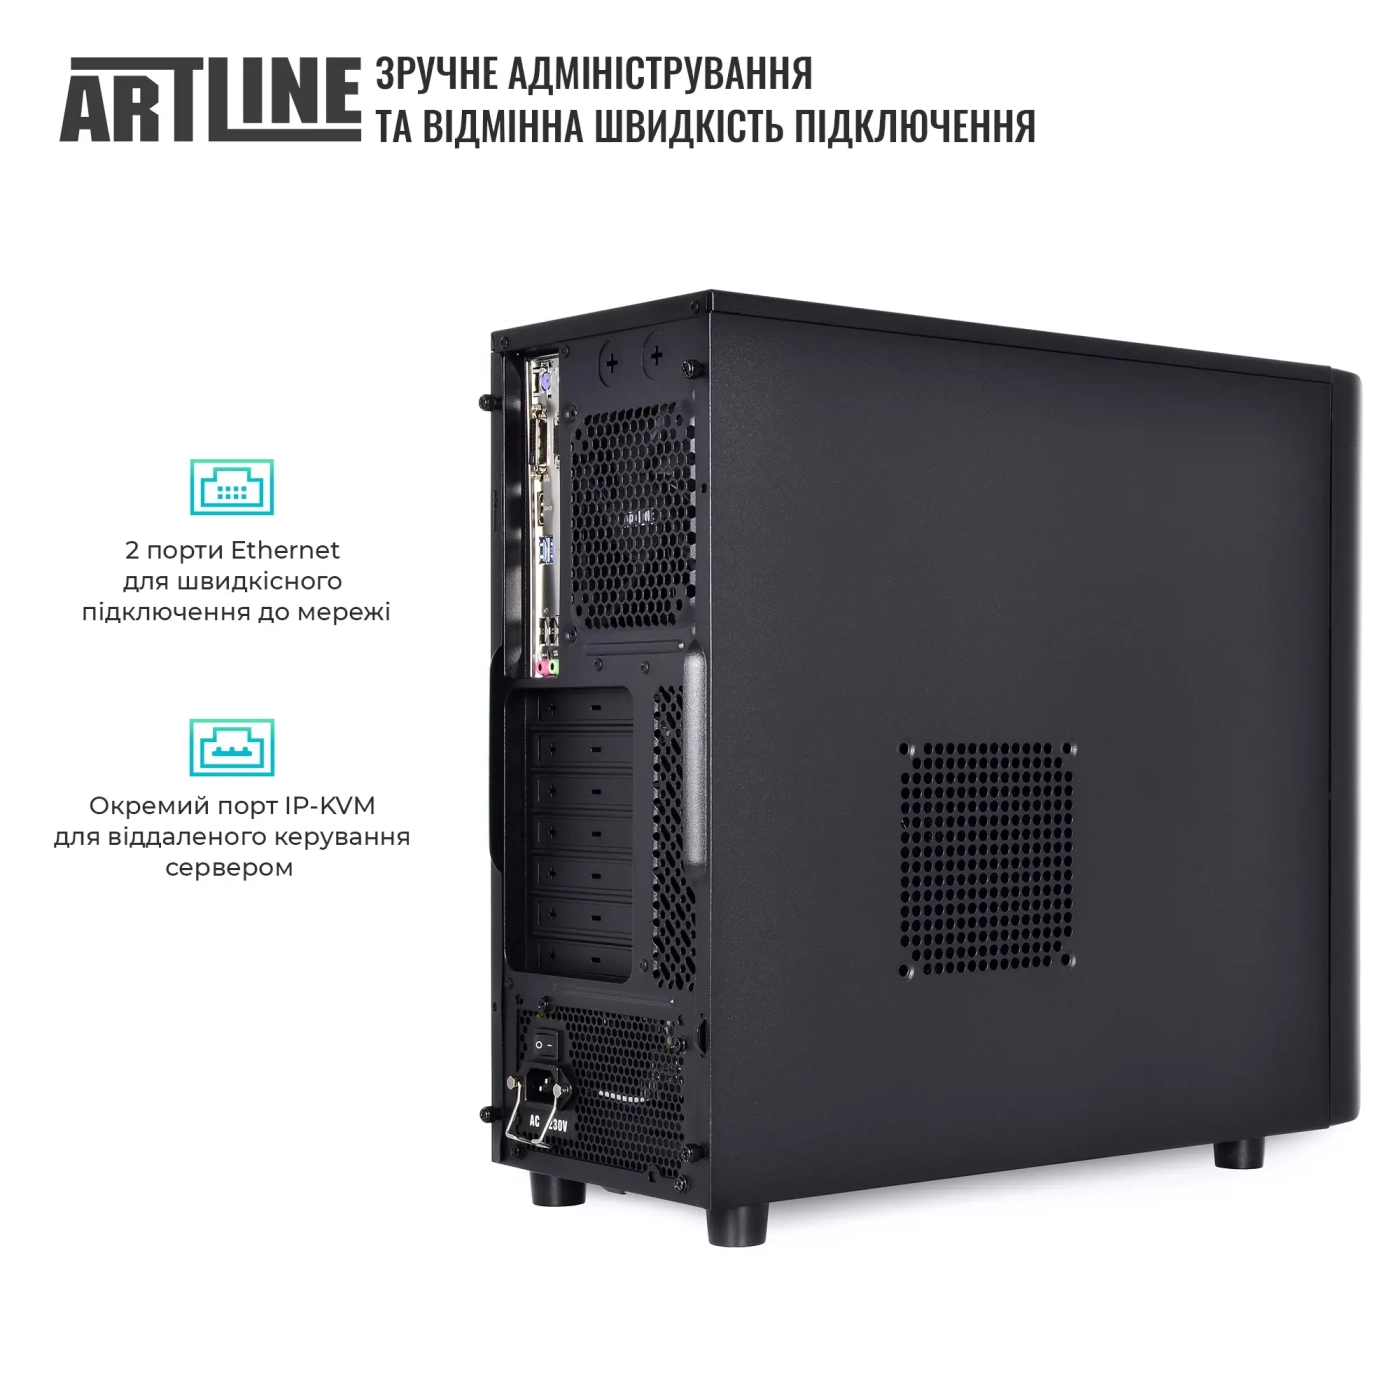 Купить Сервер ARTLINE Business T38 (T38v35) - фото 4